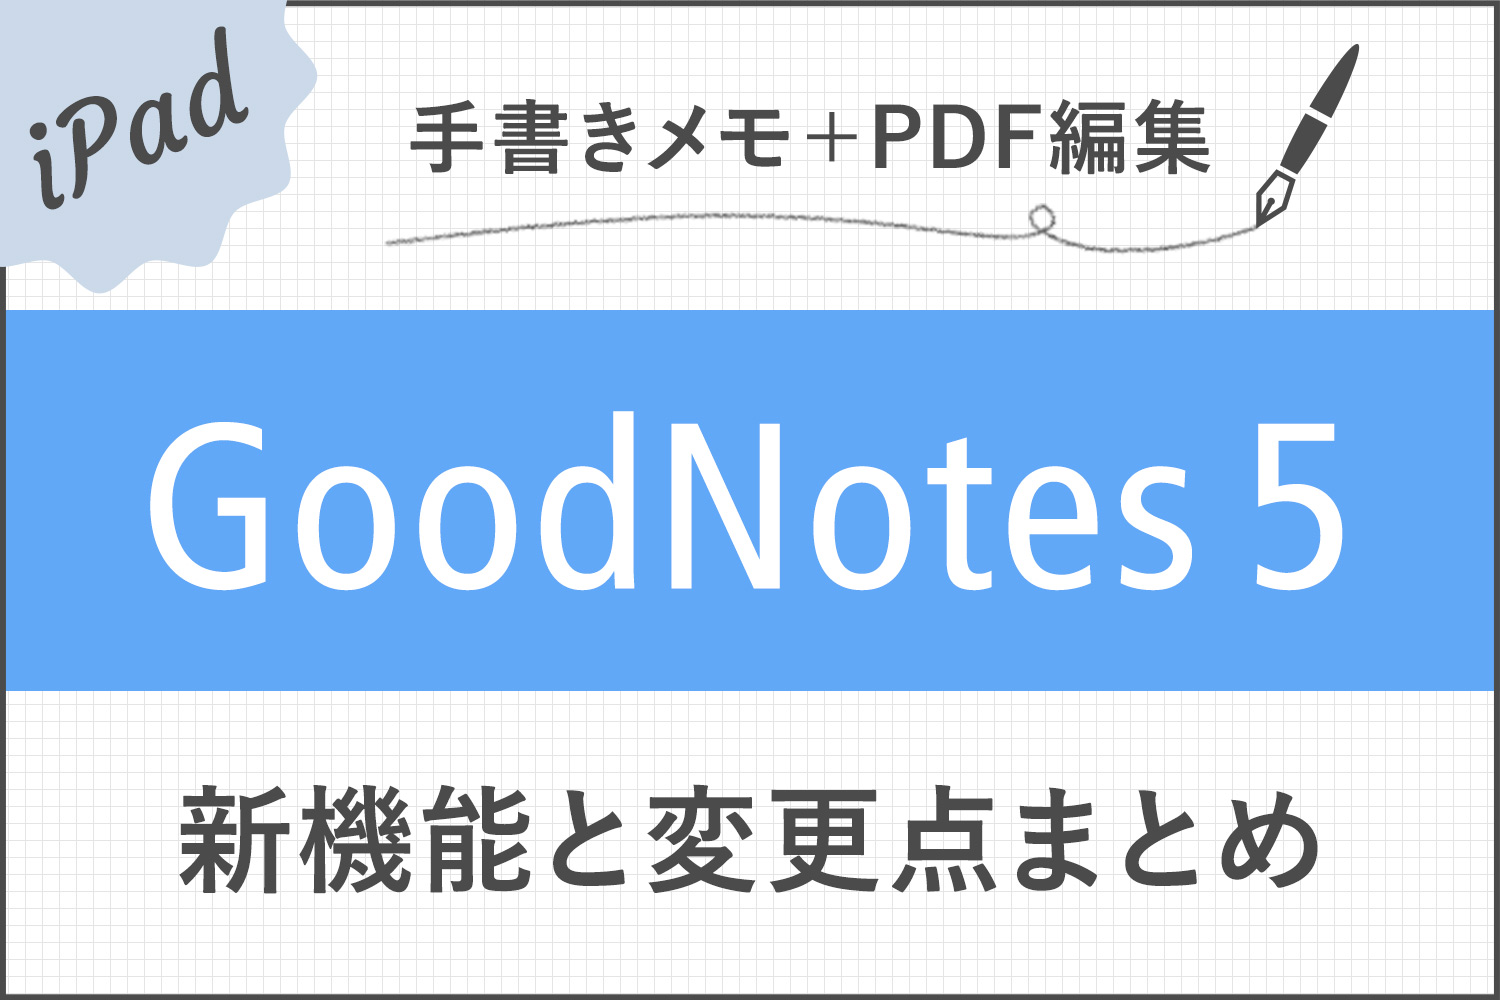 ここが変わった！GoodNotes 5の新機能とGoodNotes 4からの変更点まとめ（画像あり）